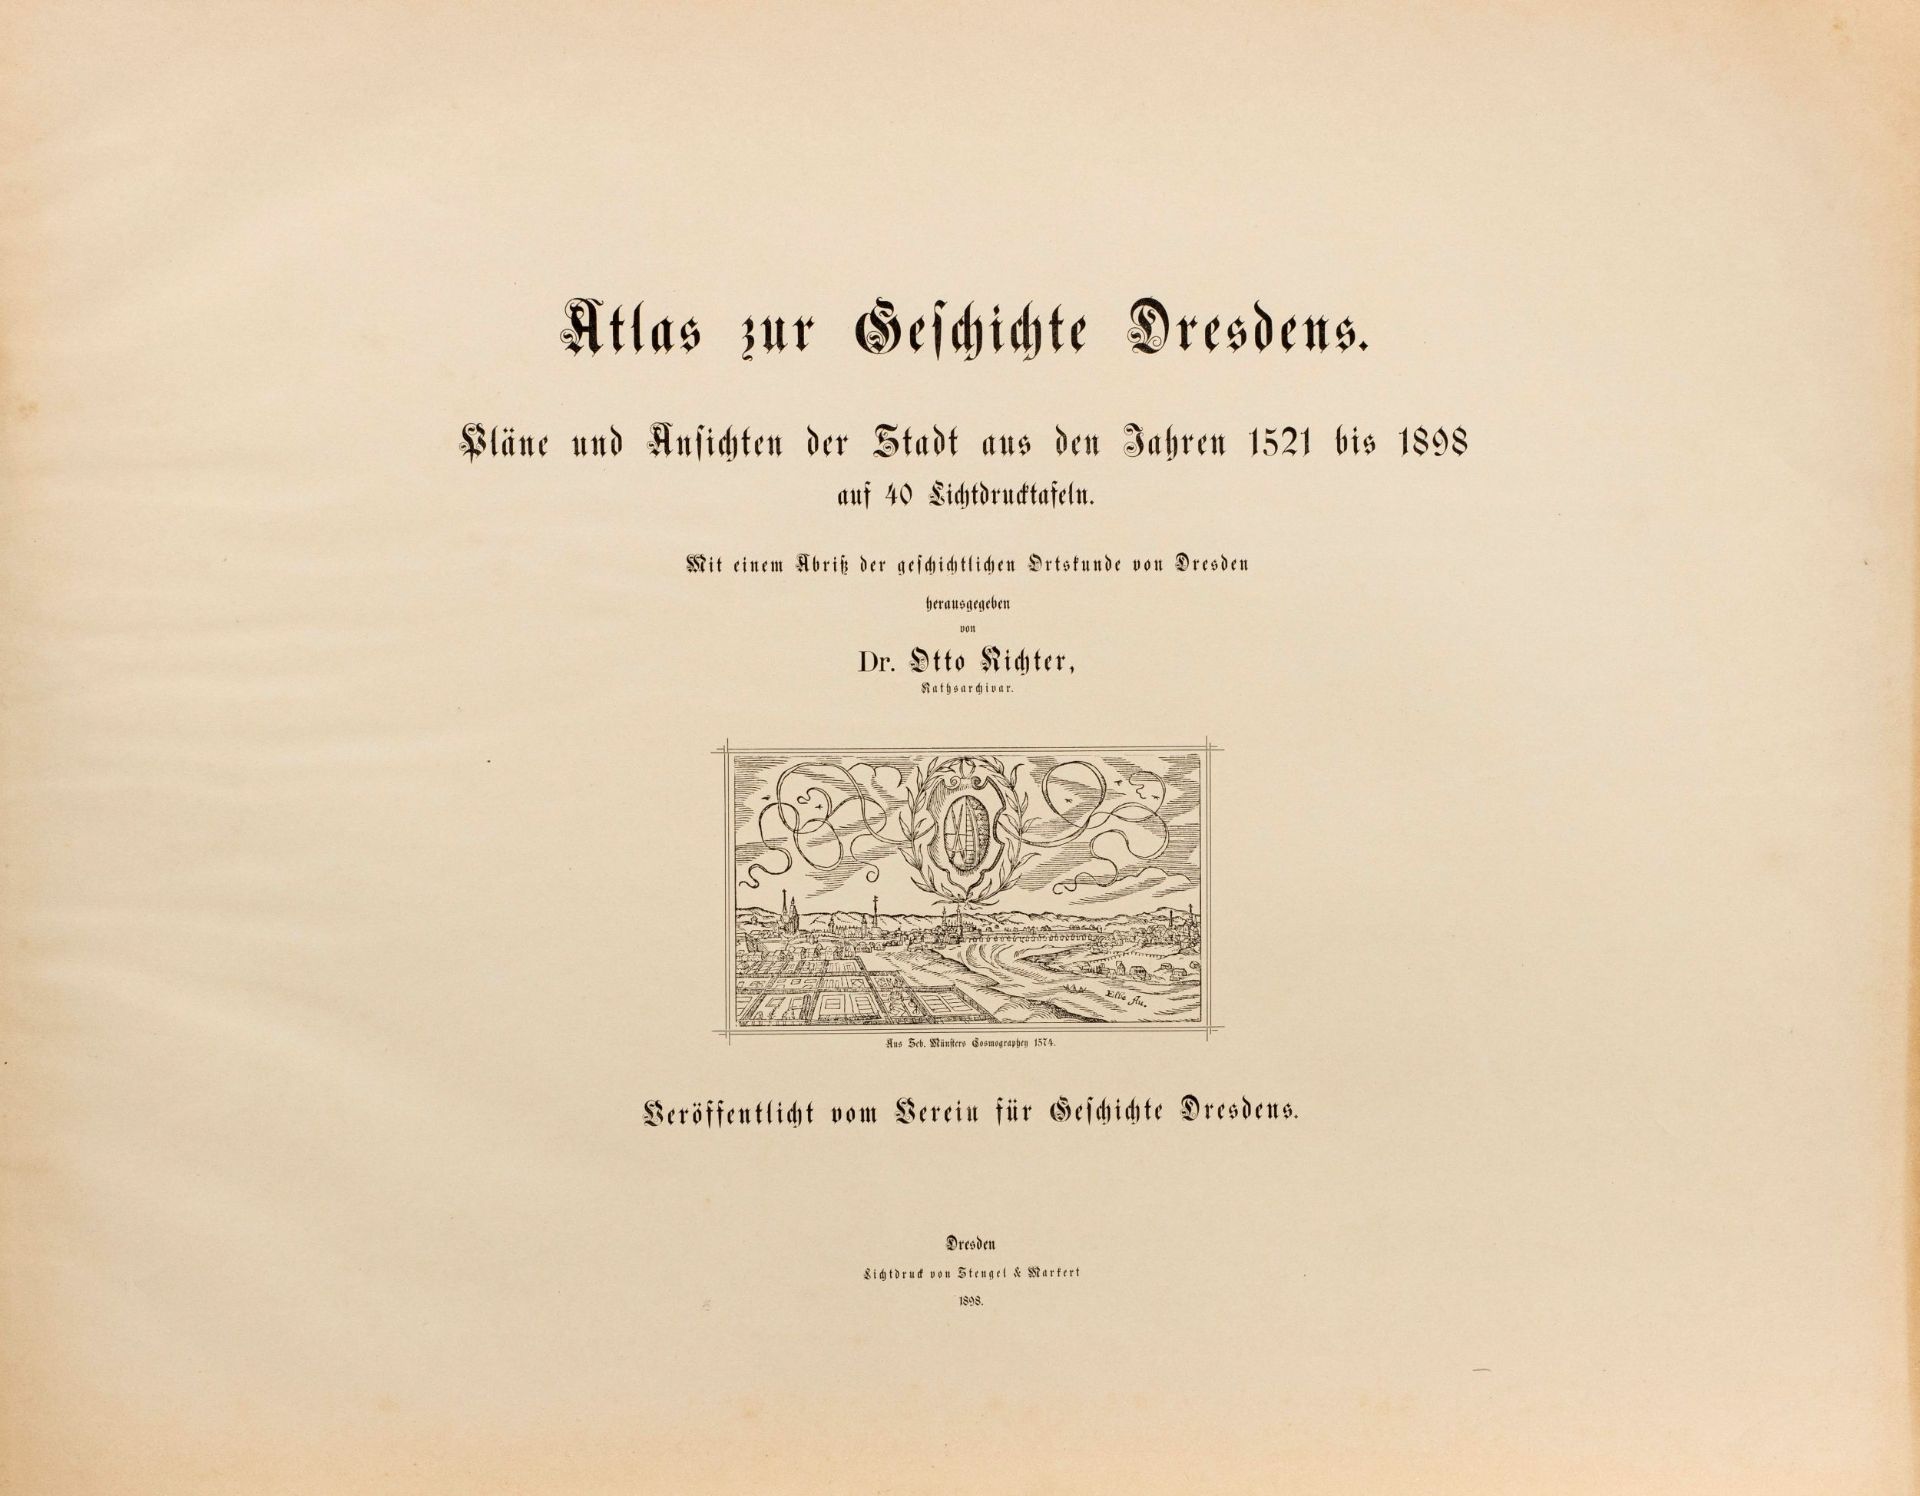 Atlas zur Geschichte Dresdens. Pläne und Ansichten der Stadt aus den Jahren 1521 bis 1898 - Image 2 of 9